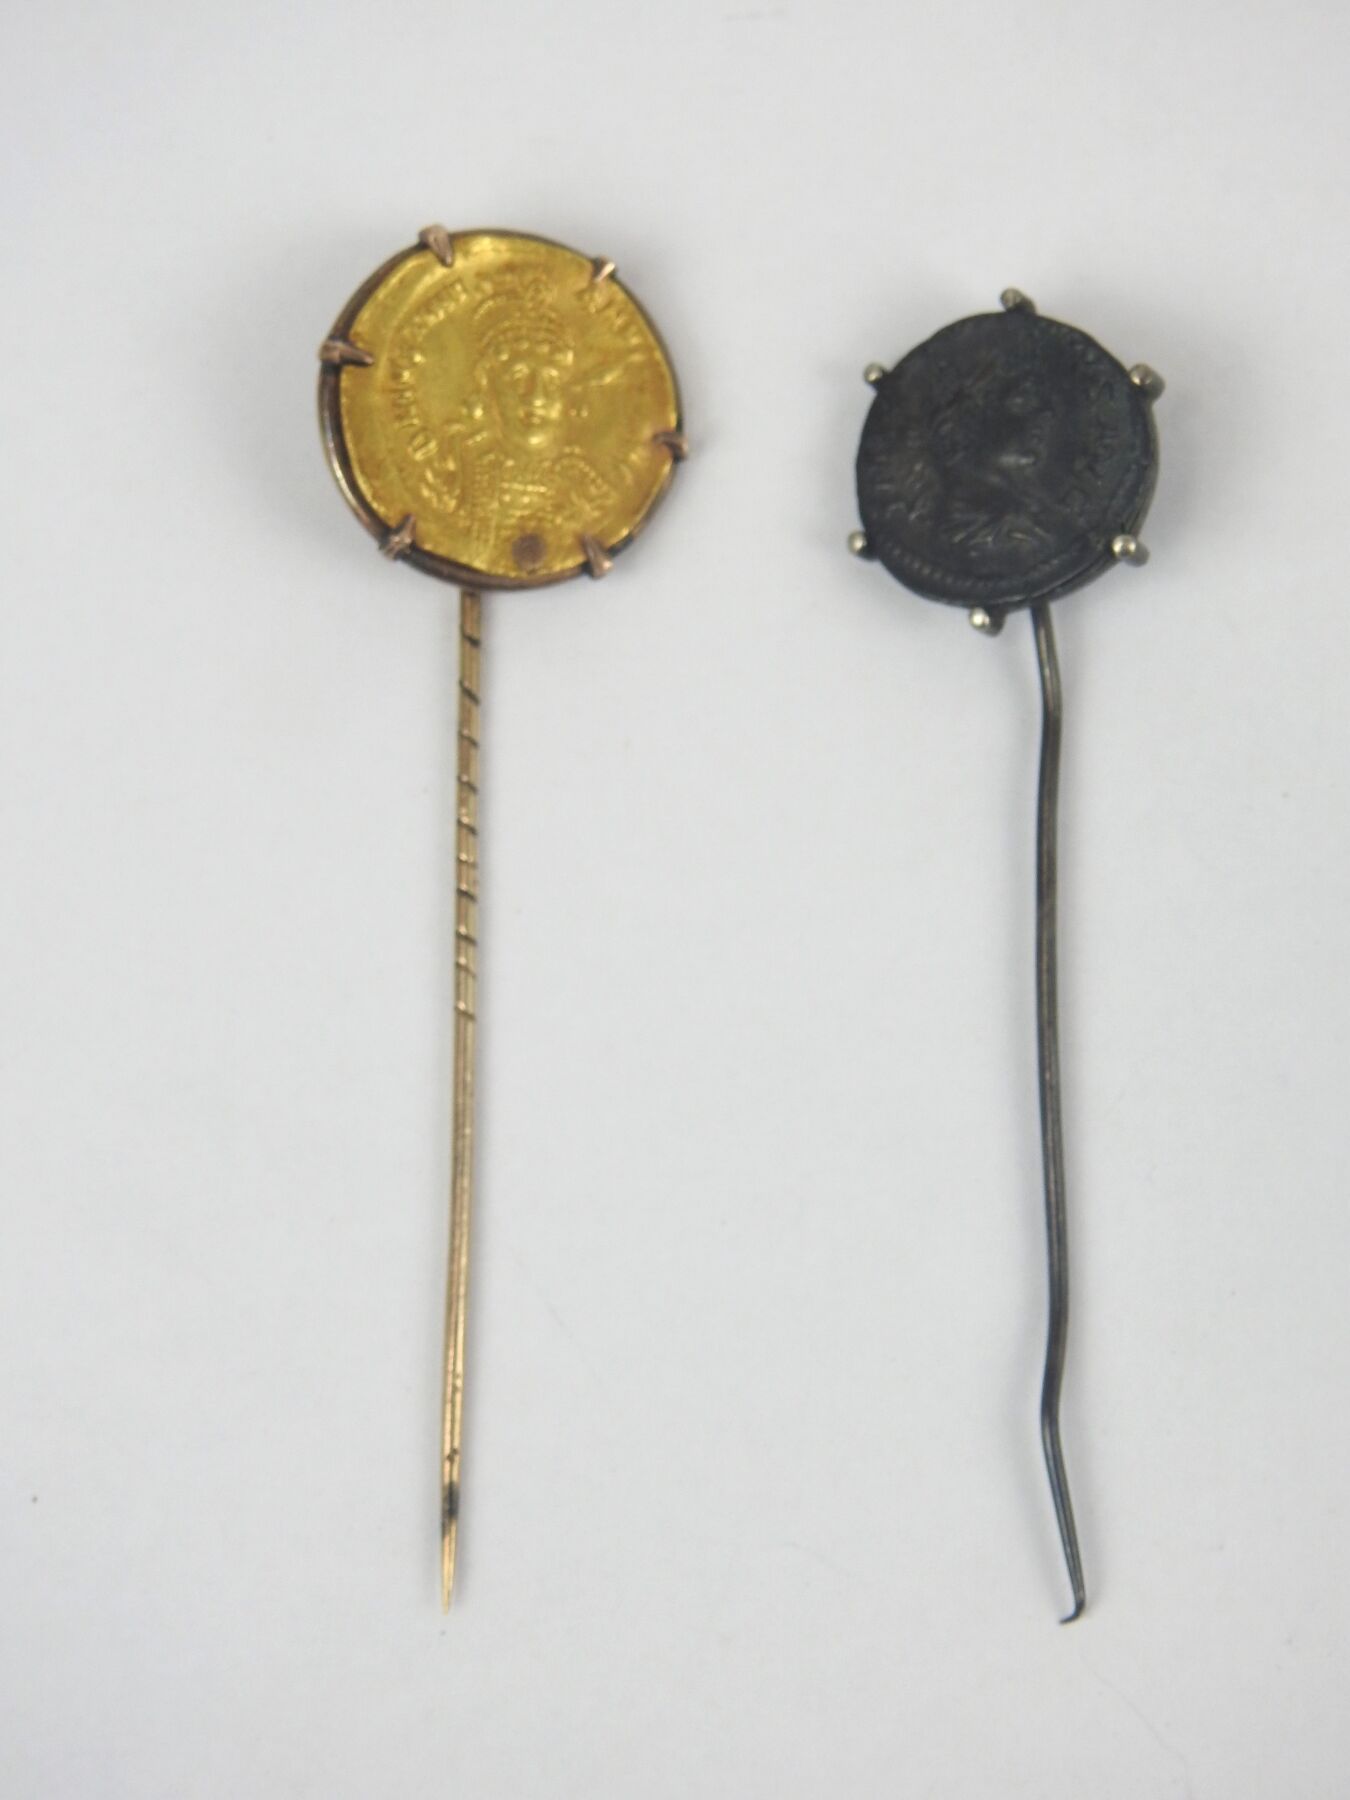 Null Spilla decorata con una moneta d'oro bizantina:
Solidus di Giustiniano II (&hellip;